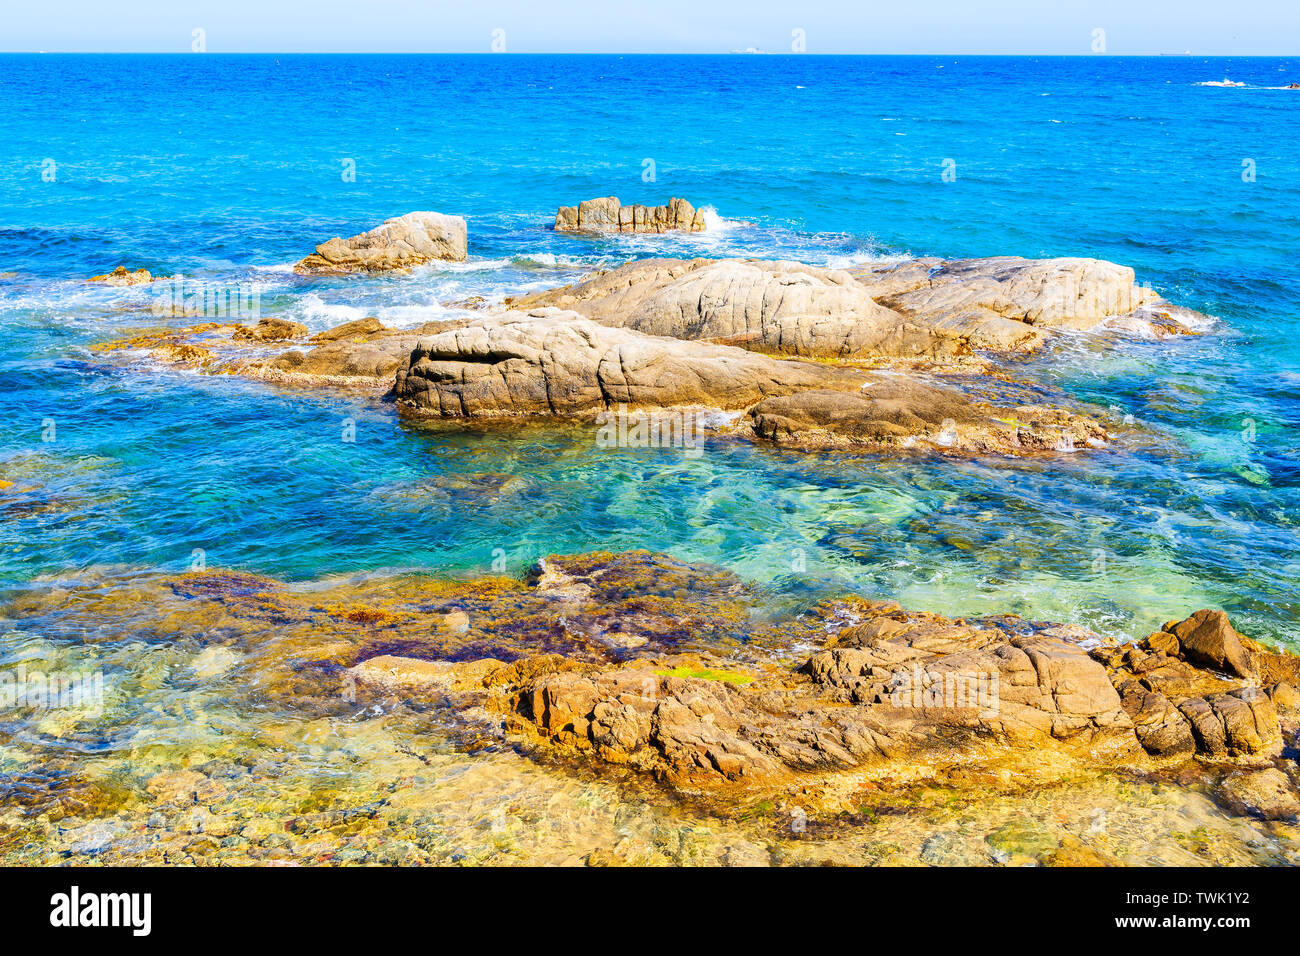 Rochers dans la mer au Cap Roig, Costa Brava, Espagne Banque D'Images